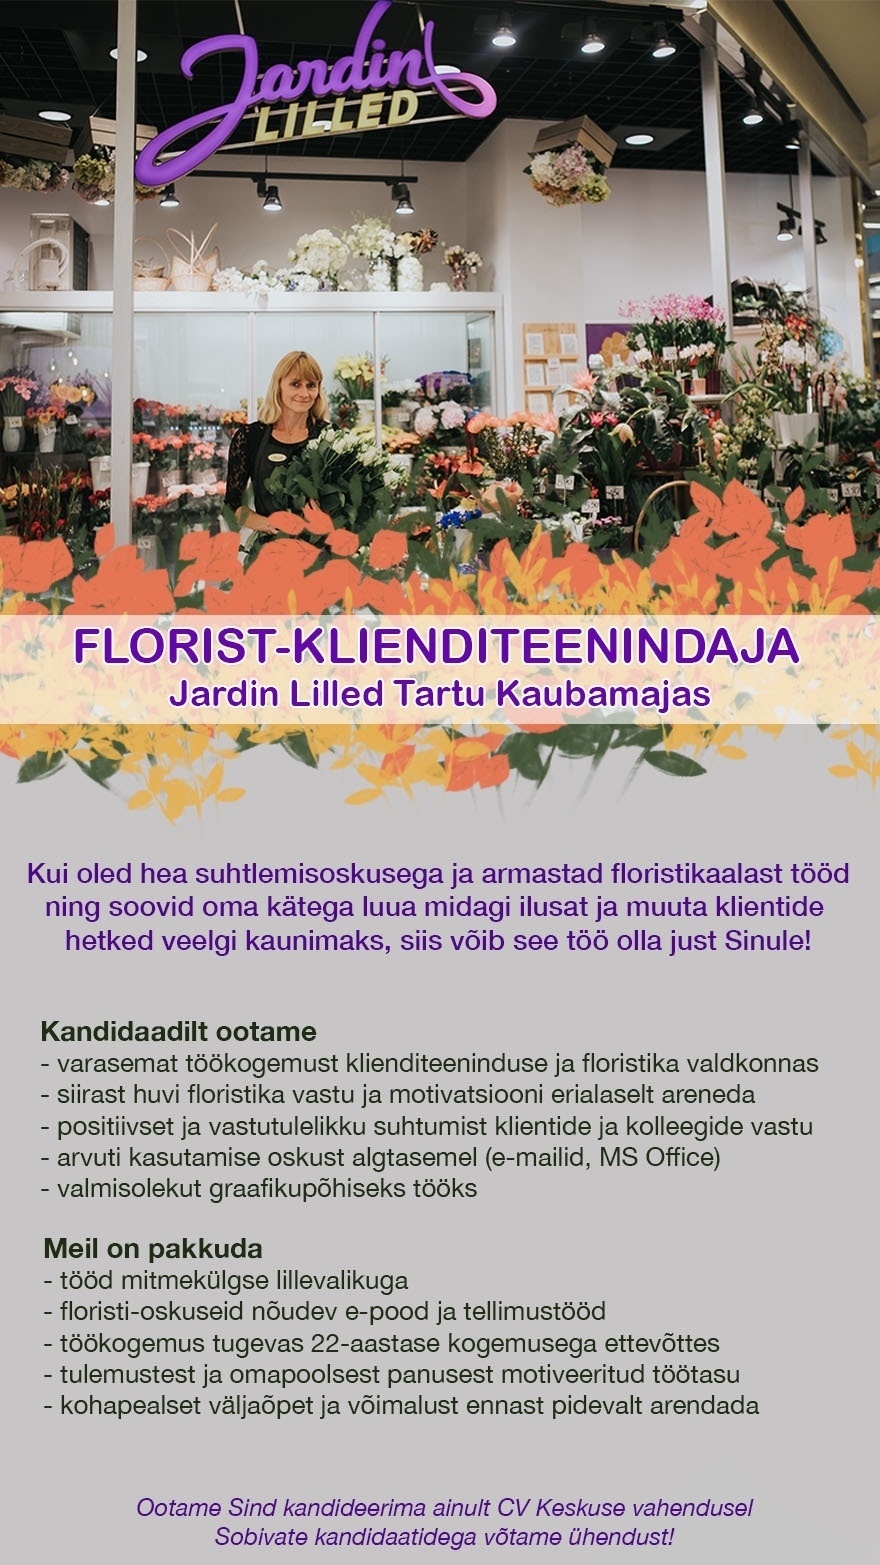 Jardin OÜ Florist-klienditeenindaja Tartu Kaubamajas